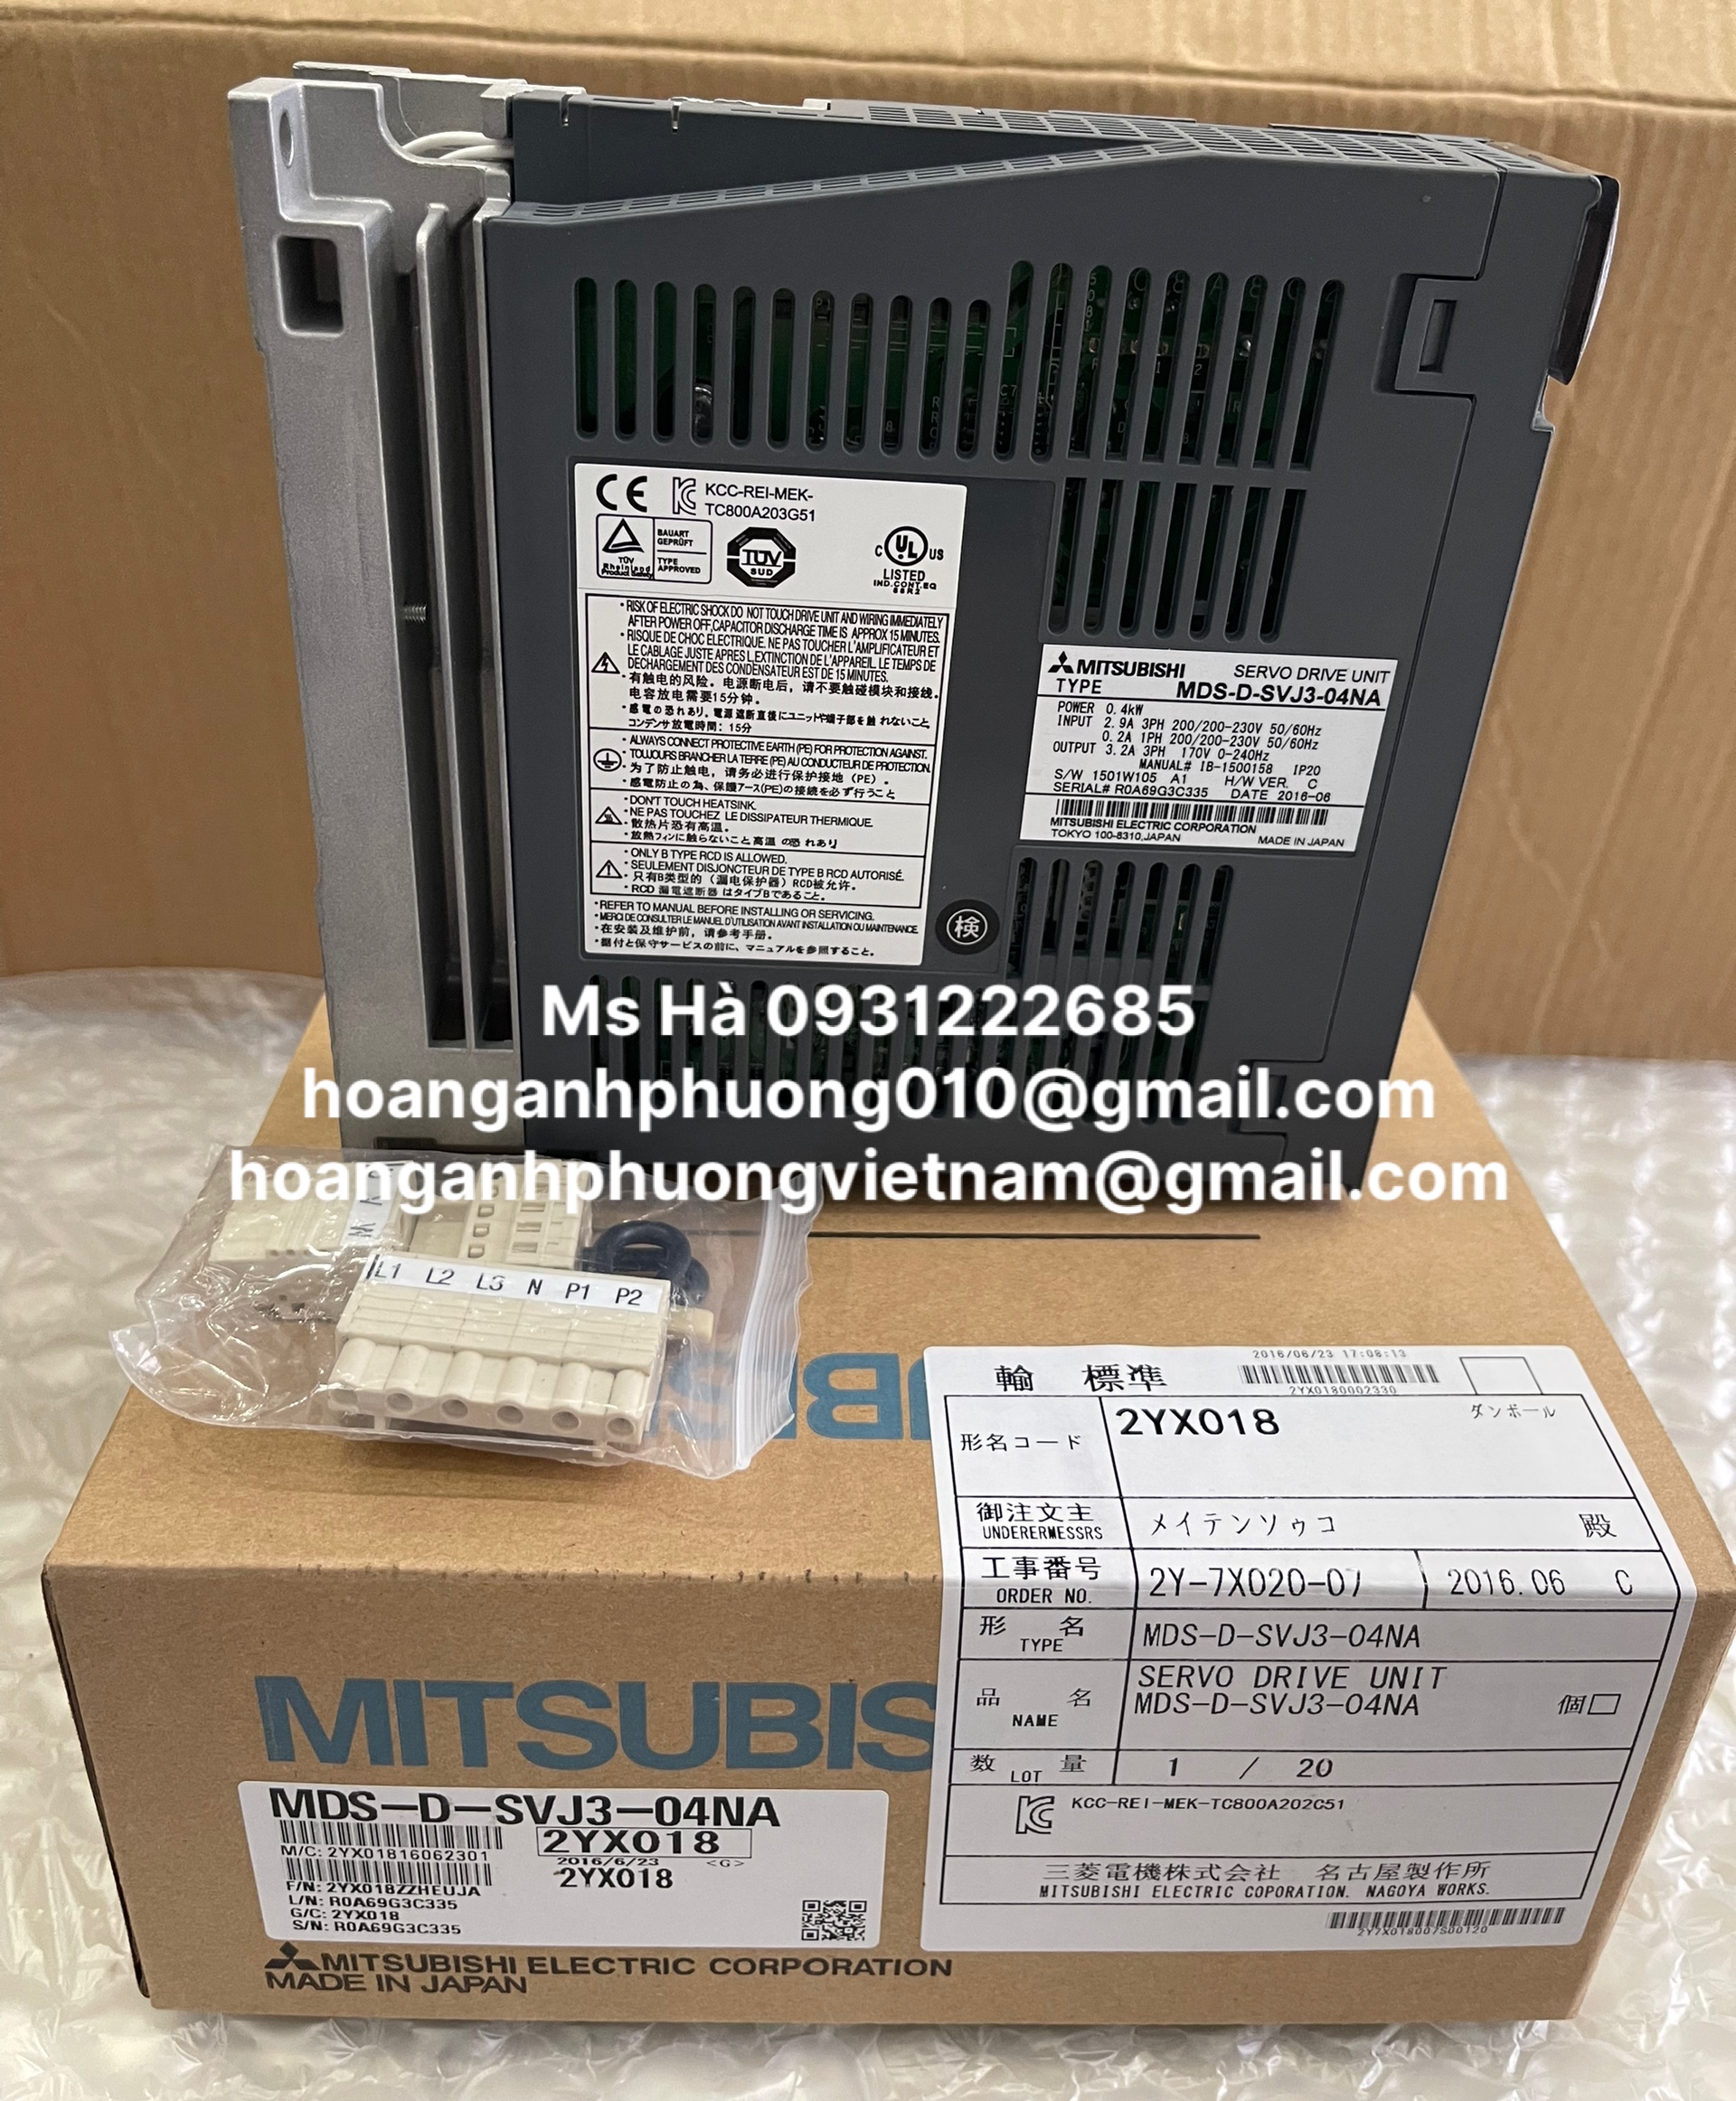 Amplifier mitsubishi giao hàng toàn quốc MDS-D-SVJ3-04NA